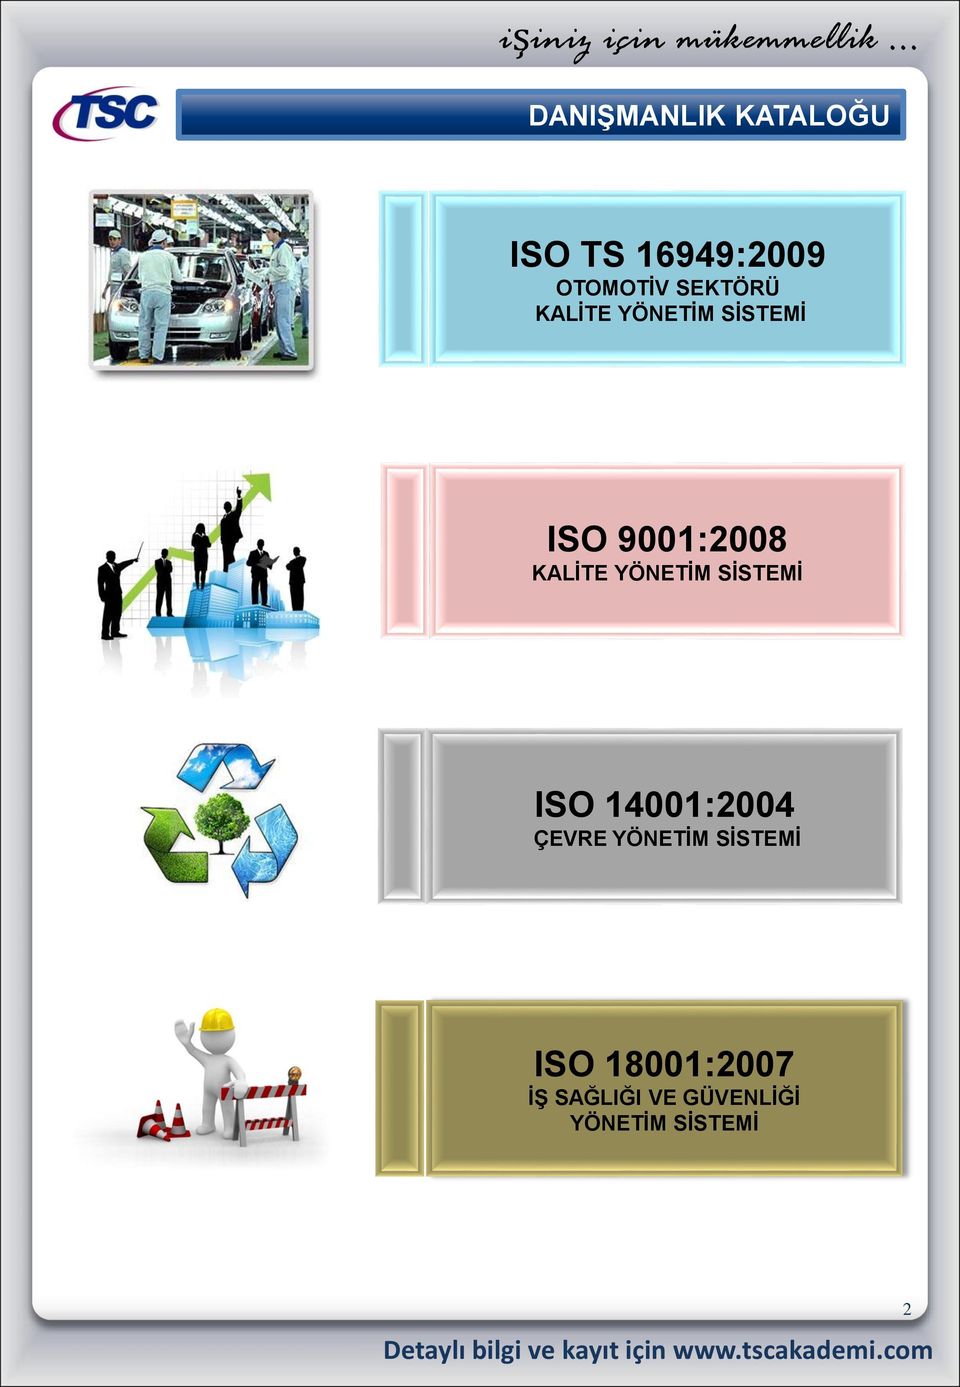 YÖNETİM SİSTEMİ ISO 14001:2004 ÇEVRE YÖNETİM SİSTEMİ